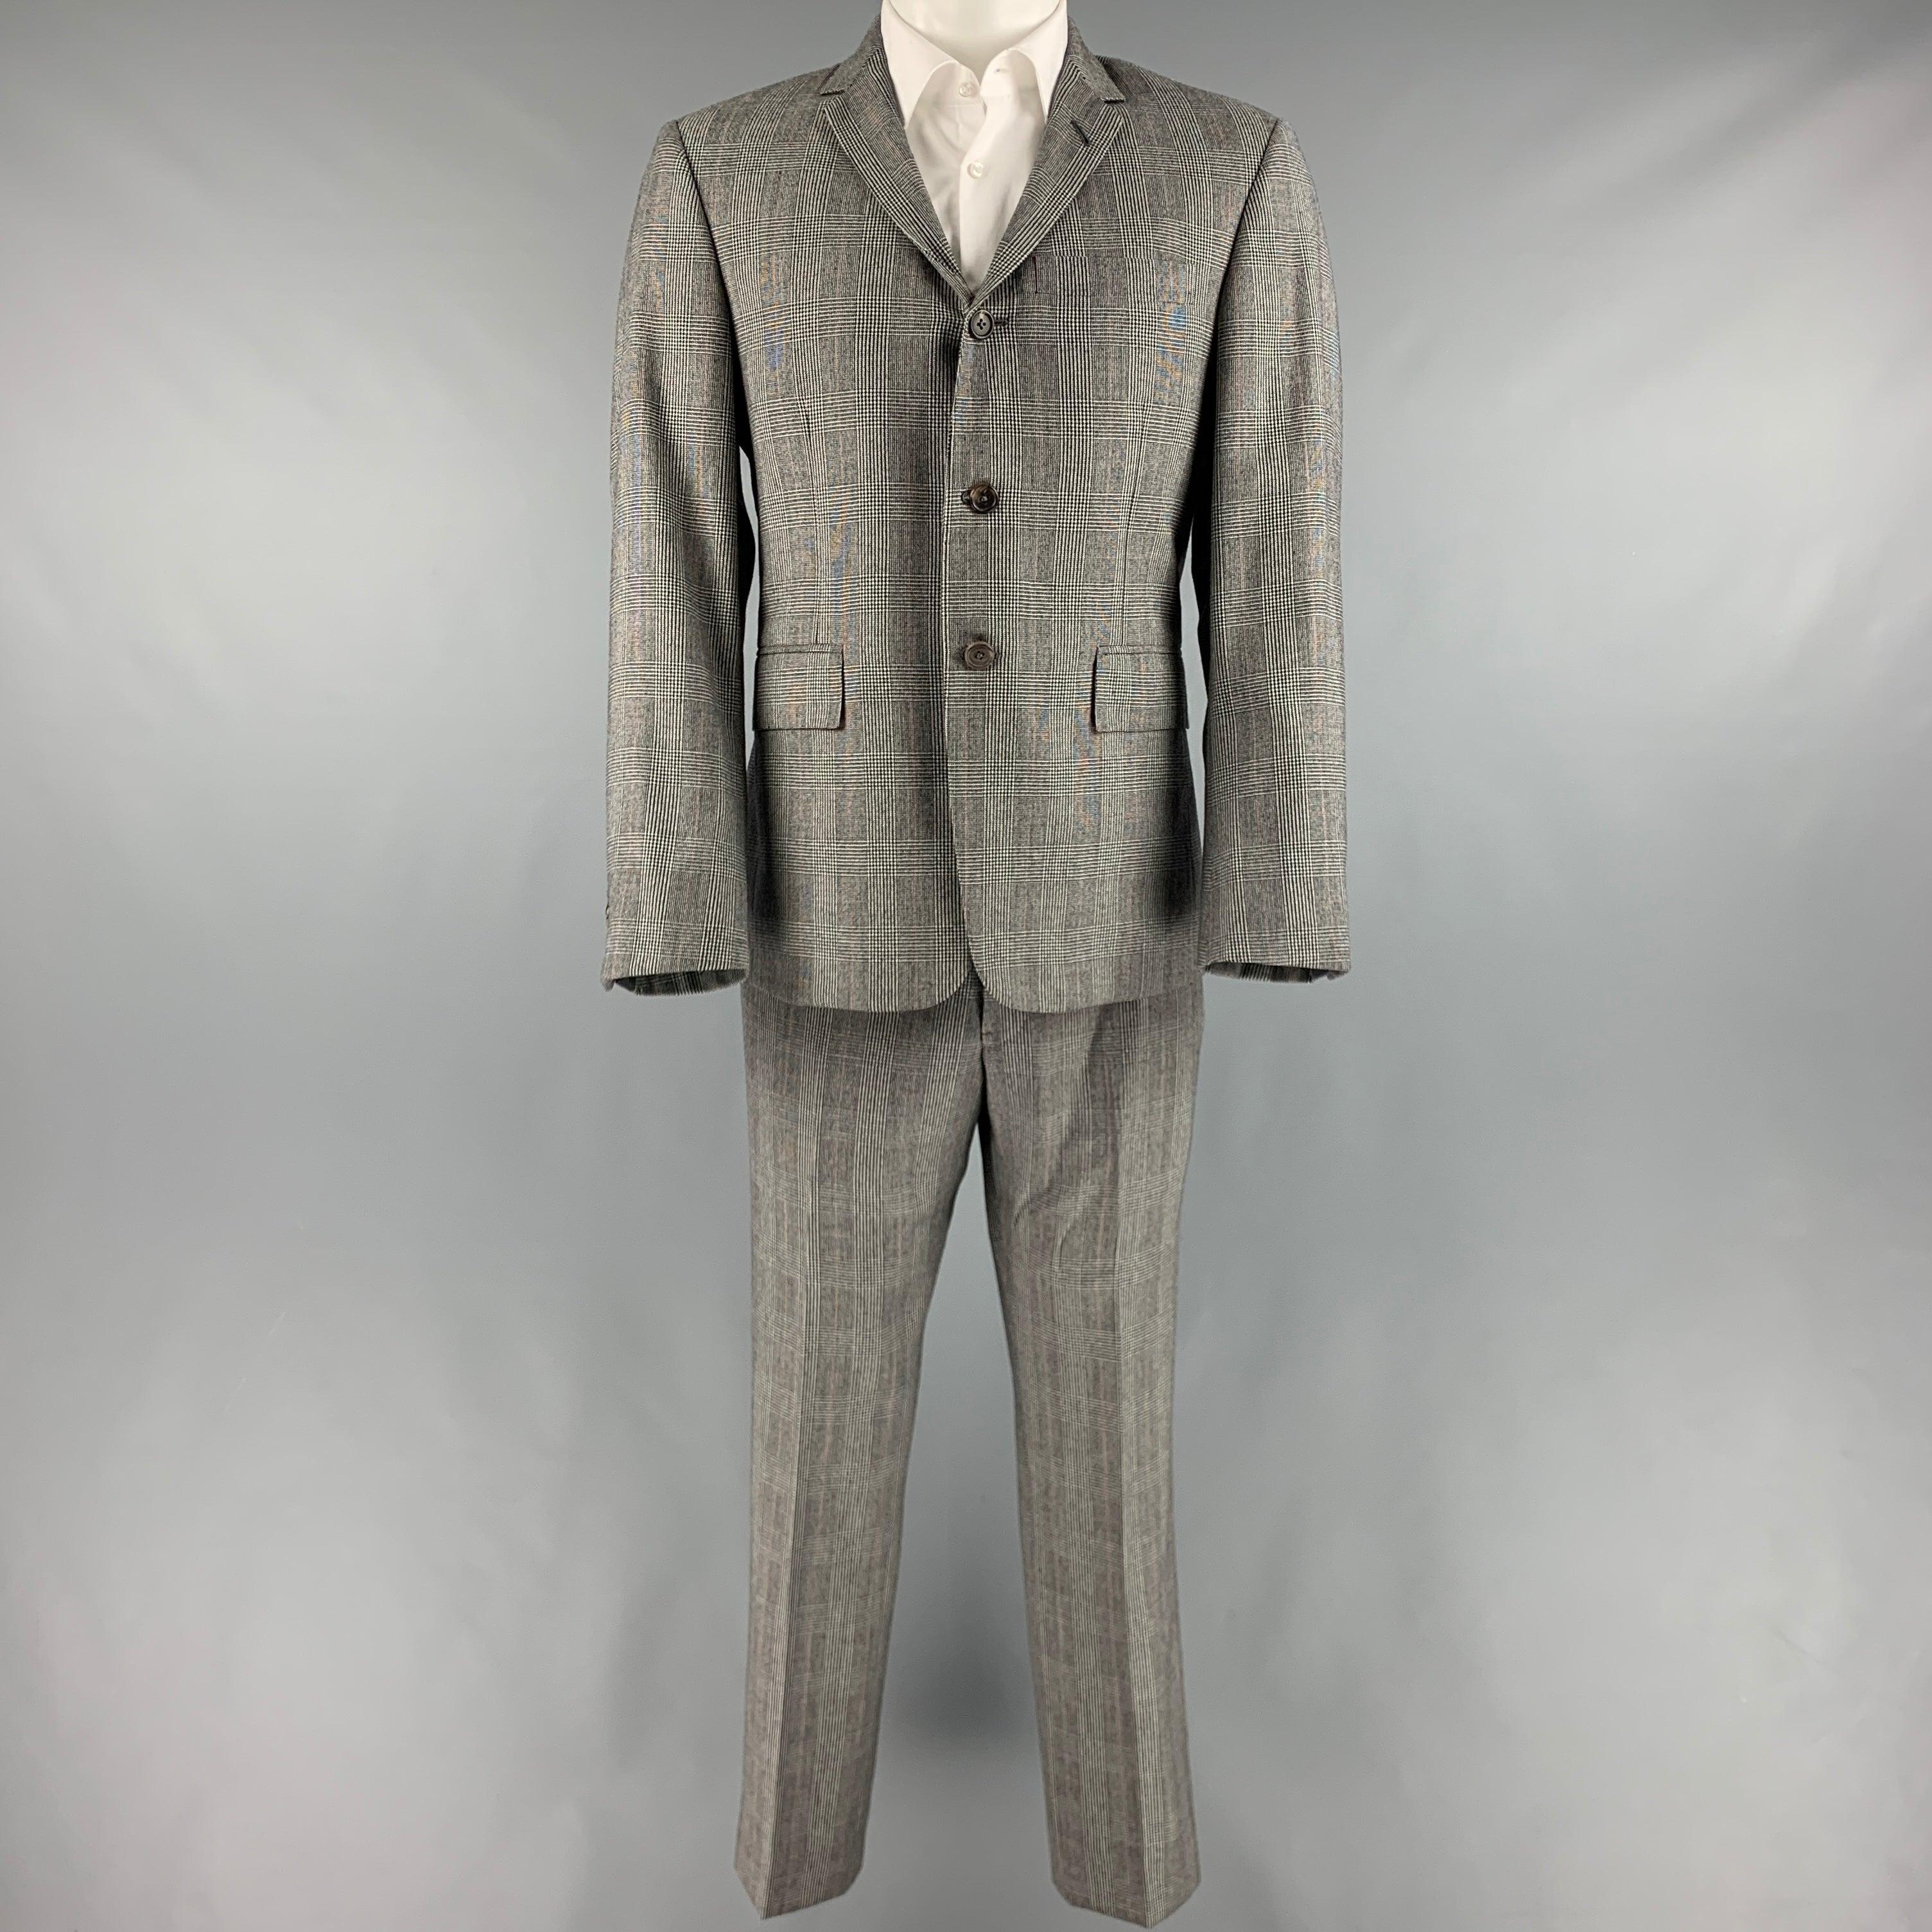 THOM BROWNE pour BARNEY'S suit
en laine noire et blanche avec une doublure complète et comprend un manteau de sport à un seul boutonnage avec revers à cran et un pantalon assorti à devant plat.
Fabriqué à la main aux États-Unis. Excellent état